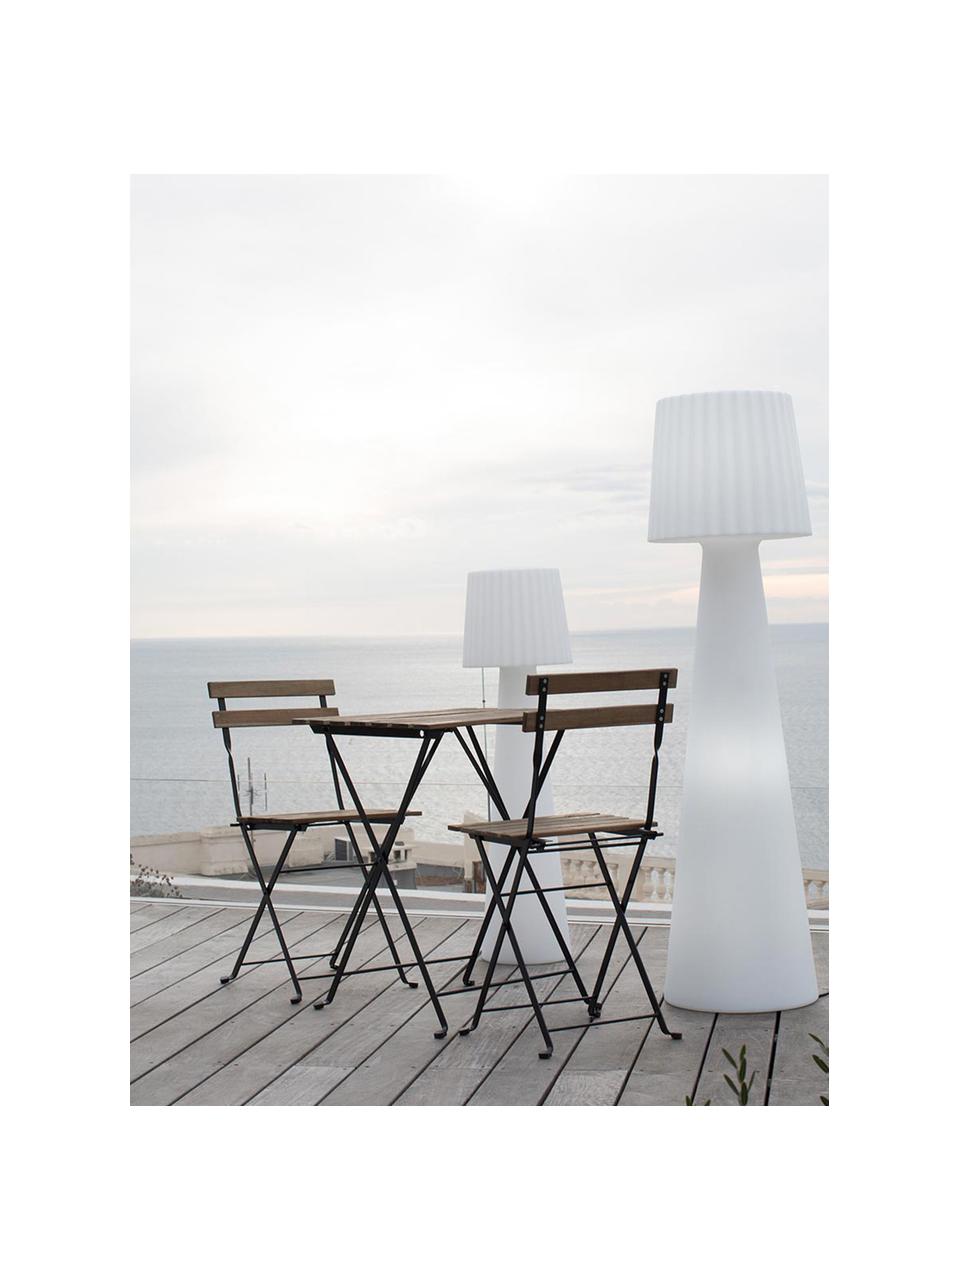 Outdoor vloerlamp Lady met stekker, Lamp: polyethyleen, Wit, Ø 30 x H 110 cm